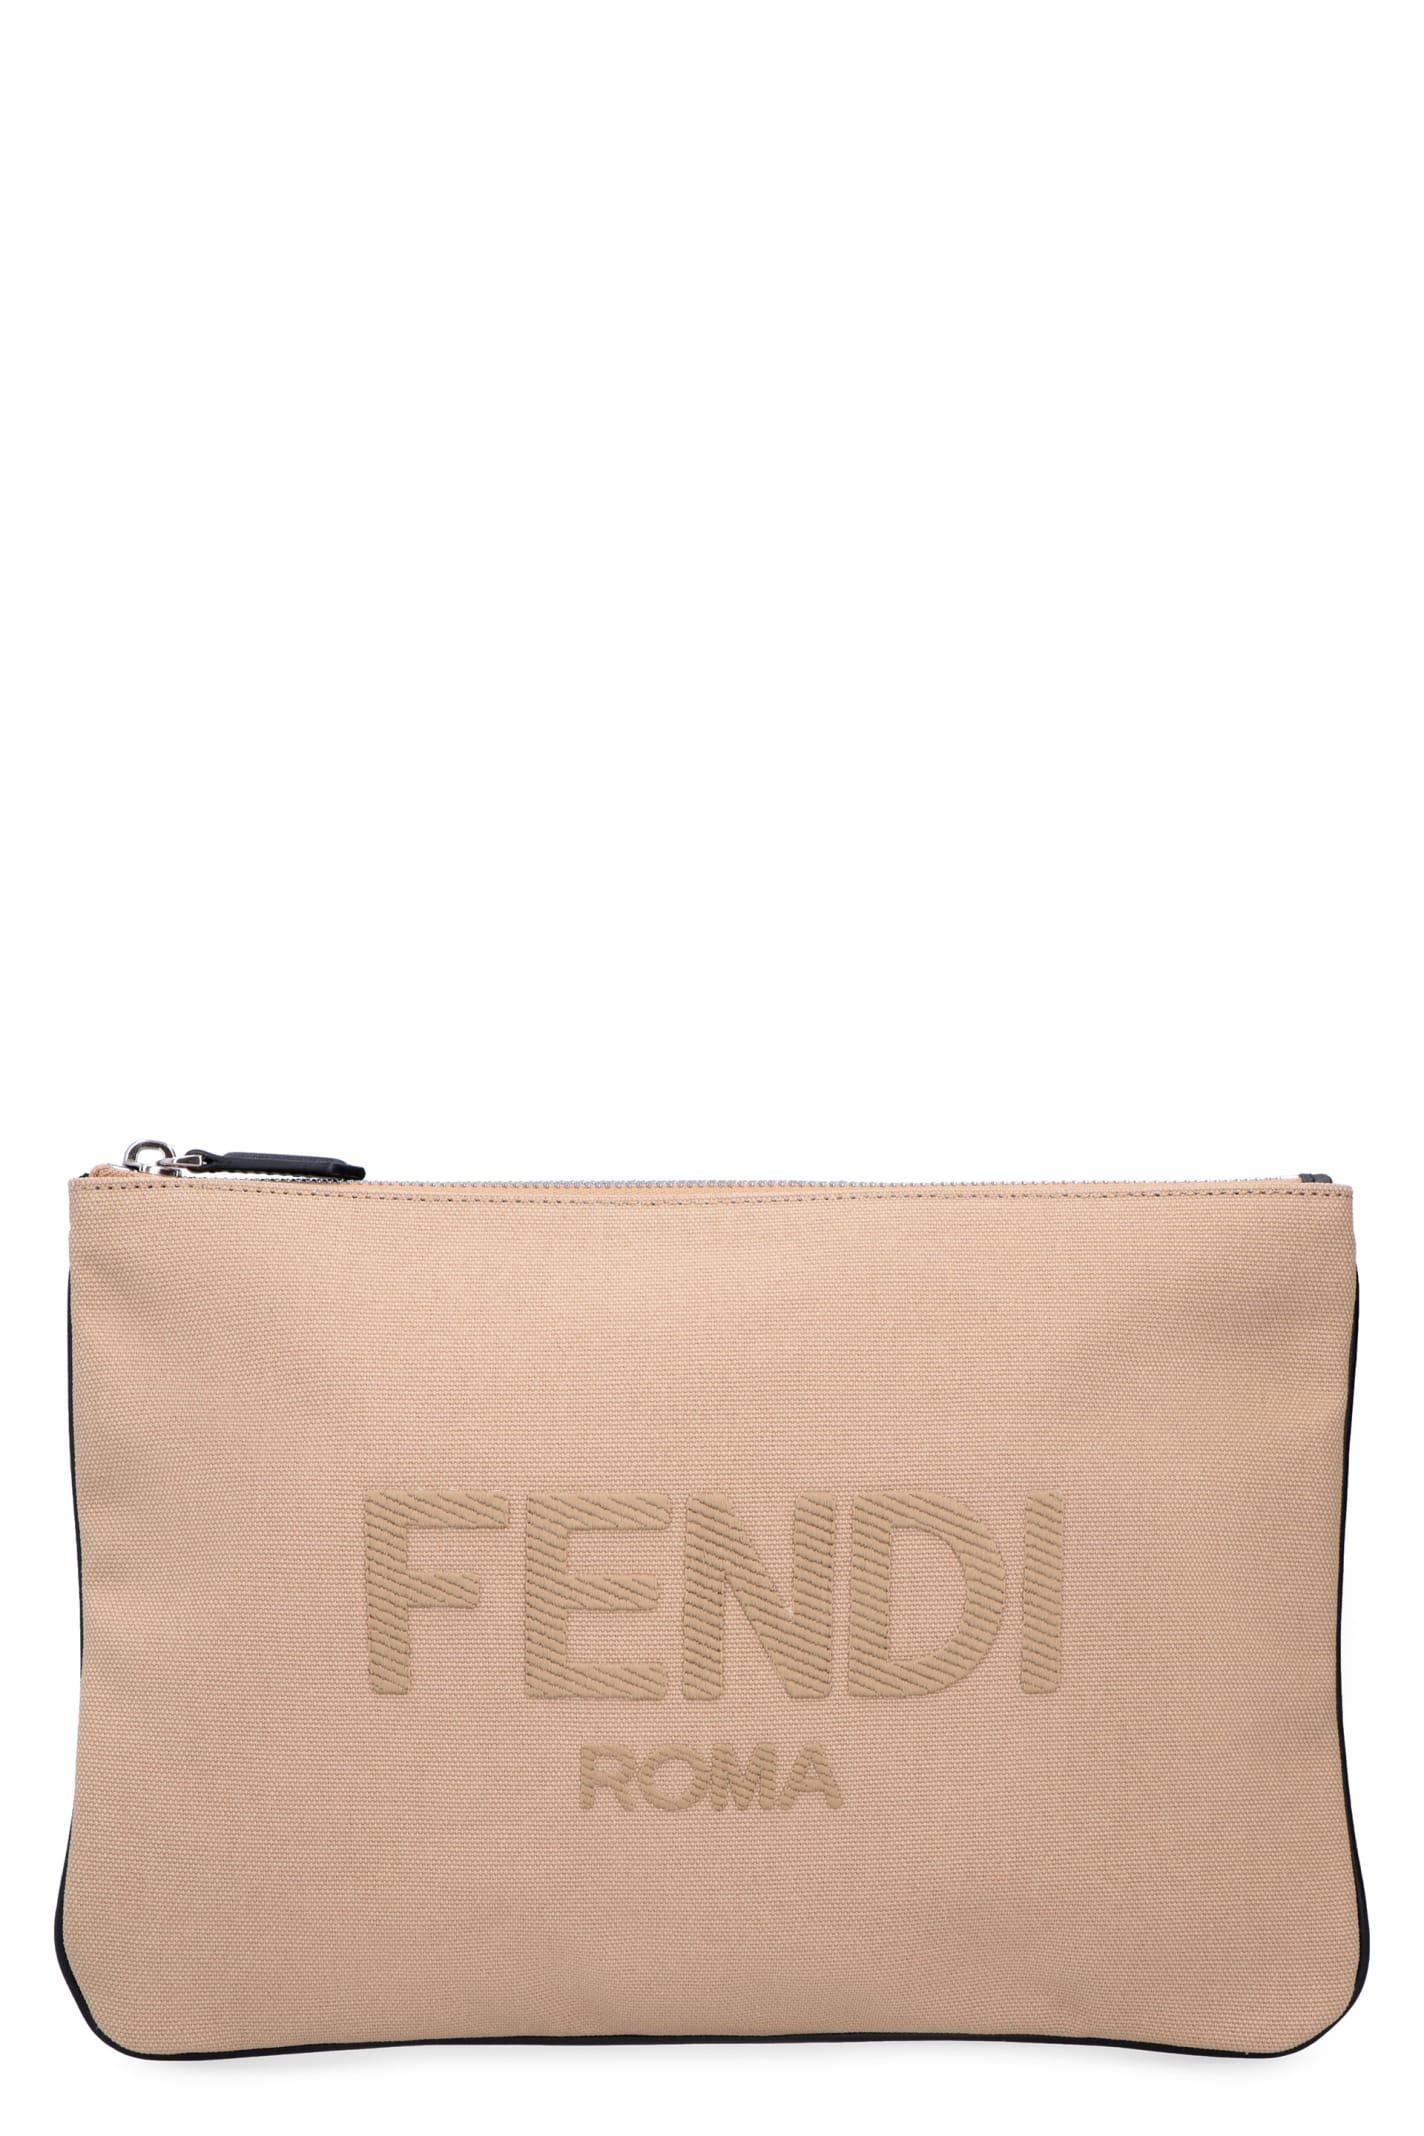 Fendi Logo Detail Flat Pouch